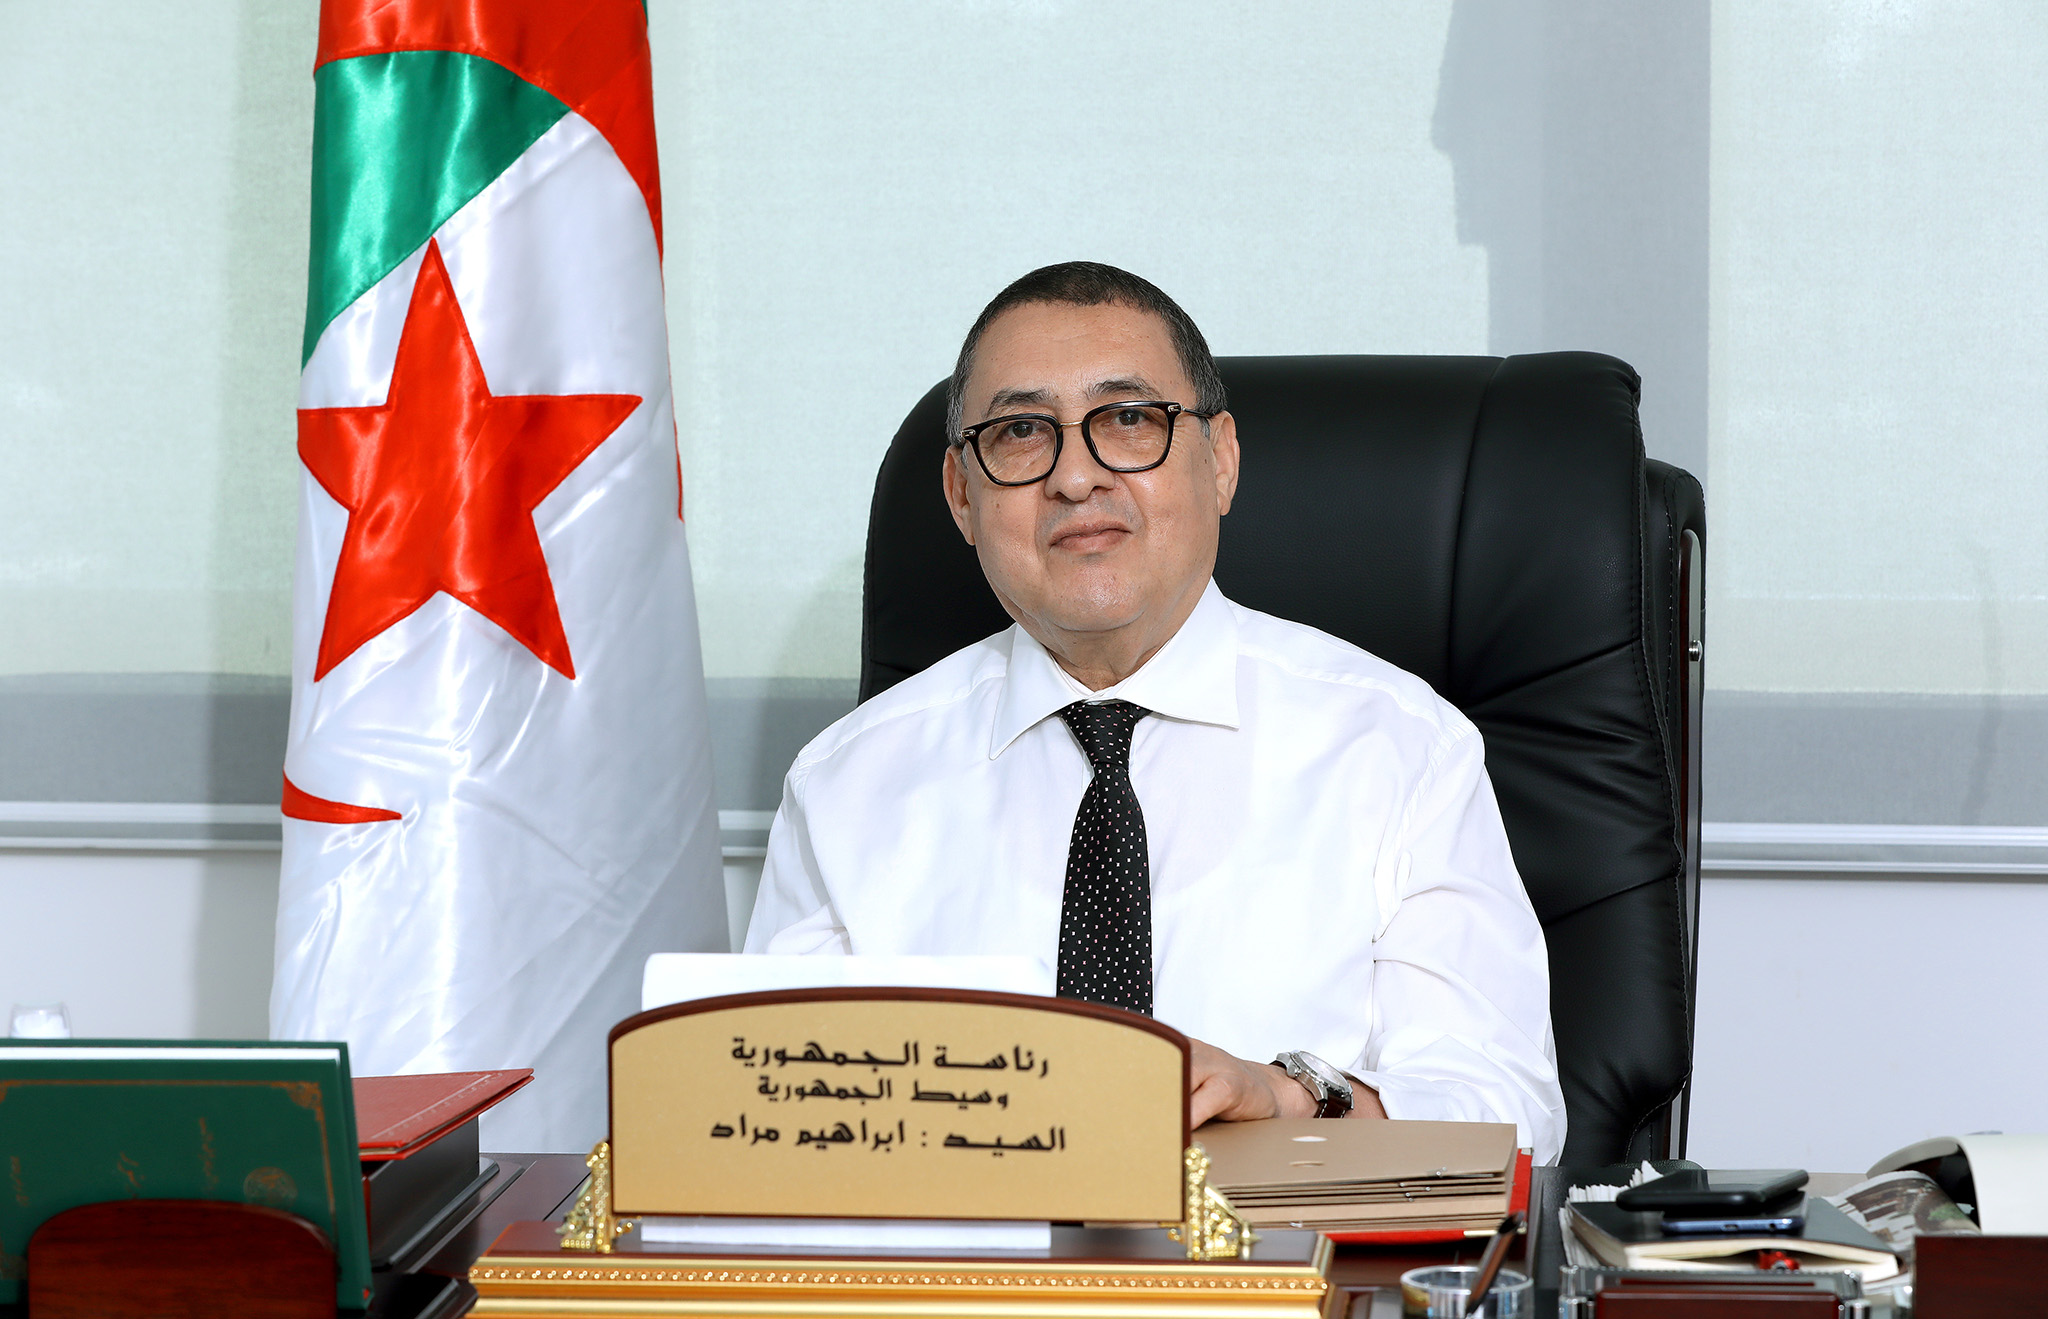 Le ministre de l'Intérieur entame une visite de travail dans la wilaya de Tissemsilt